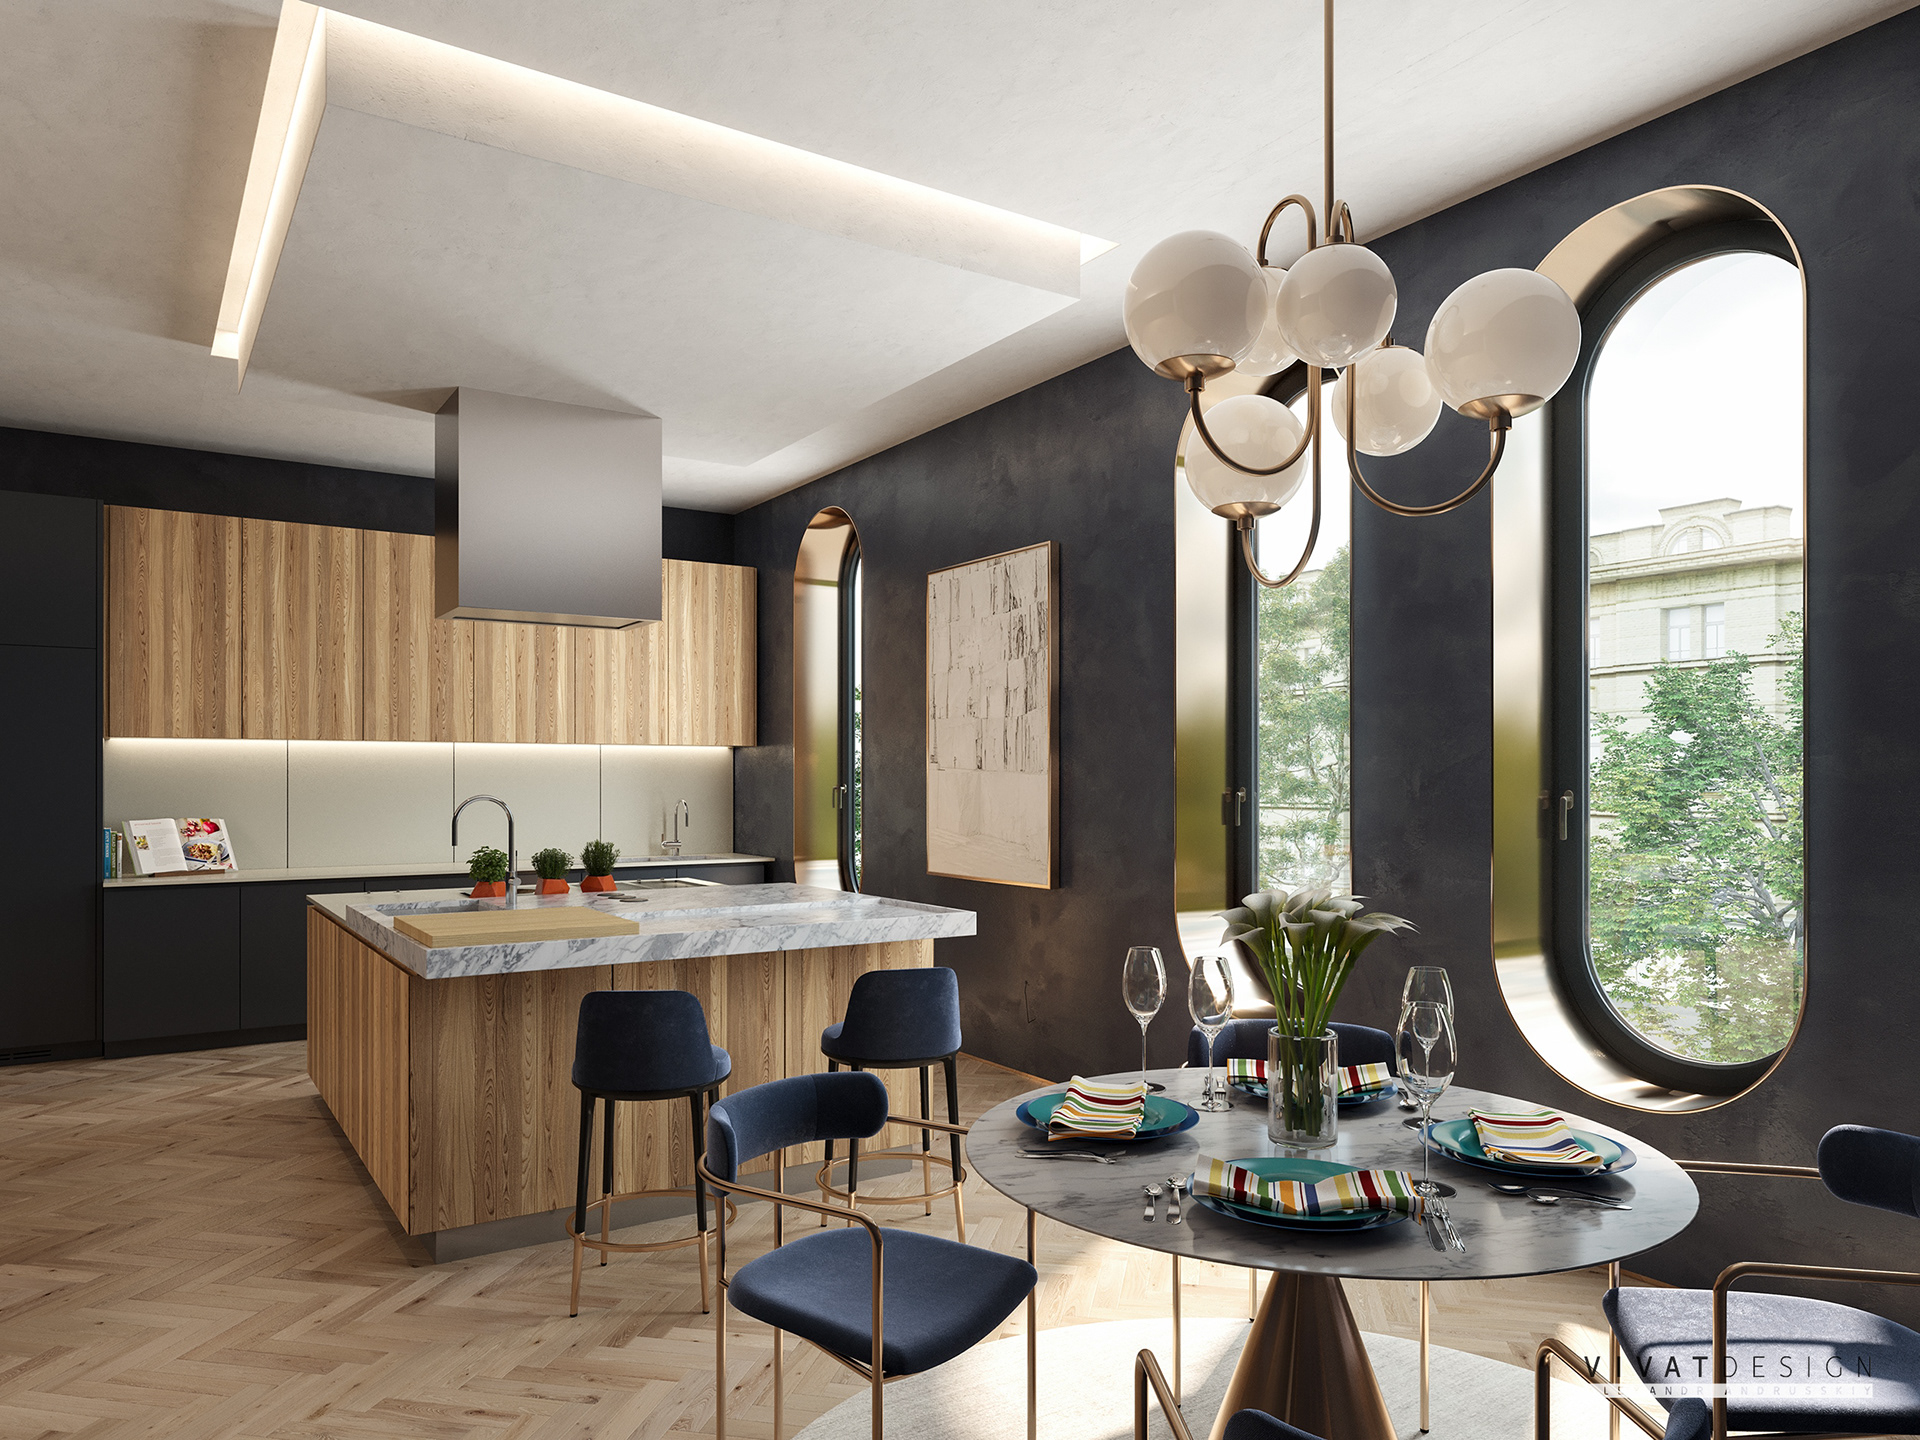 IconP - Thiết kế chung cư căn hộ gam màu nâu be hiện đại, lấy gỗ làm trọng tâm, khung cửa sổ tròn